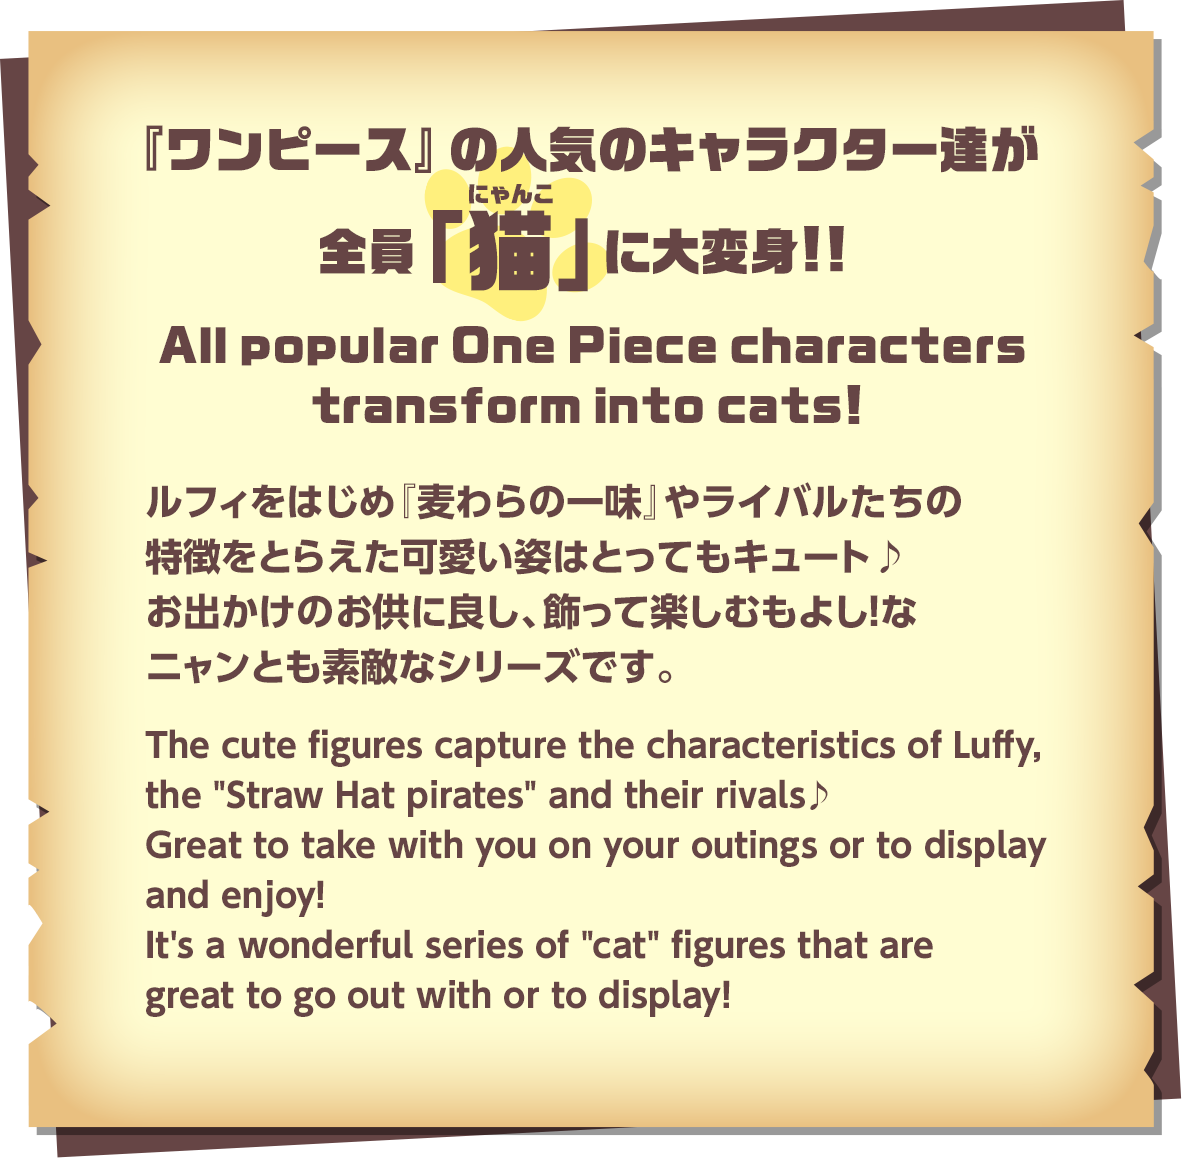 『ワンピース』の人気のキャラクター達が全員「猫」(にゃんこ)に大変身!!ルフィをはじめ『麦わらの一味』やライバルたちの特徴をとらえた可愛い姿はとってもキュート♪お出かけのお供に良し、飾って楽しむもよし！なニャンとも素敵なシリーズです。／All popular One Piece characters transform into cats!The cute figures capture the characteristics of Luffy, the 'Straw Hat pirates' and their rivals♪ Great to take with you on your outings or to display and enjoy! It's a wonderful series of 'cat' figures that are great to go out with or to display!